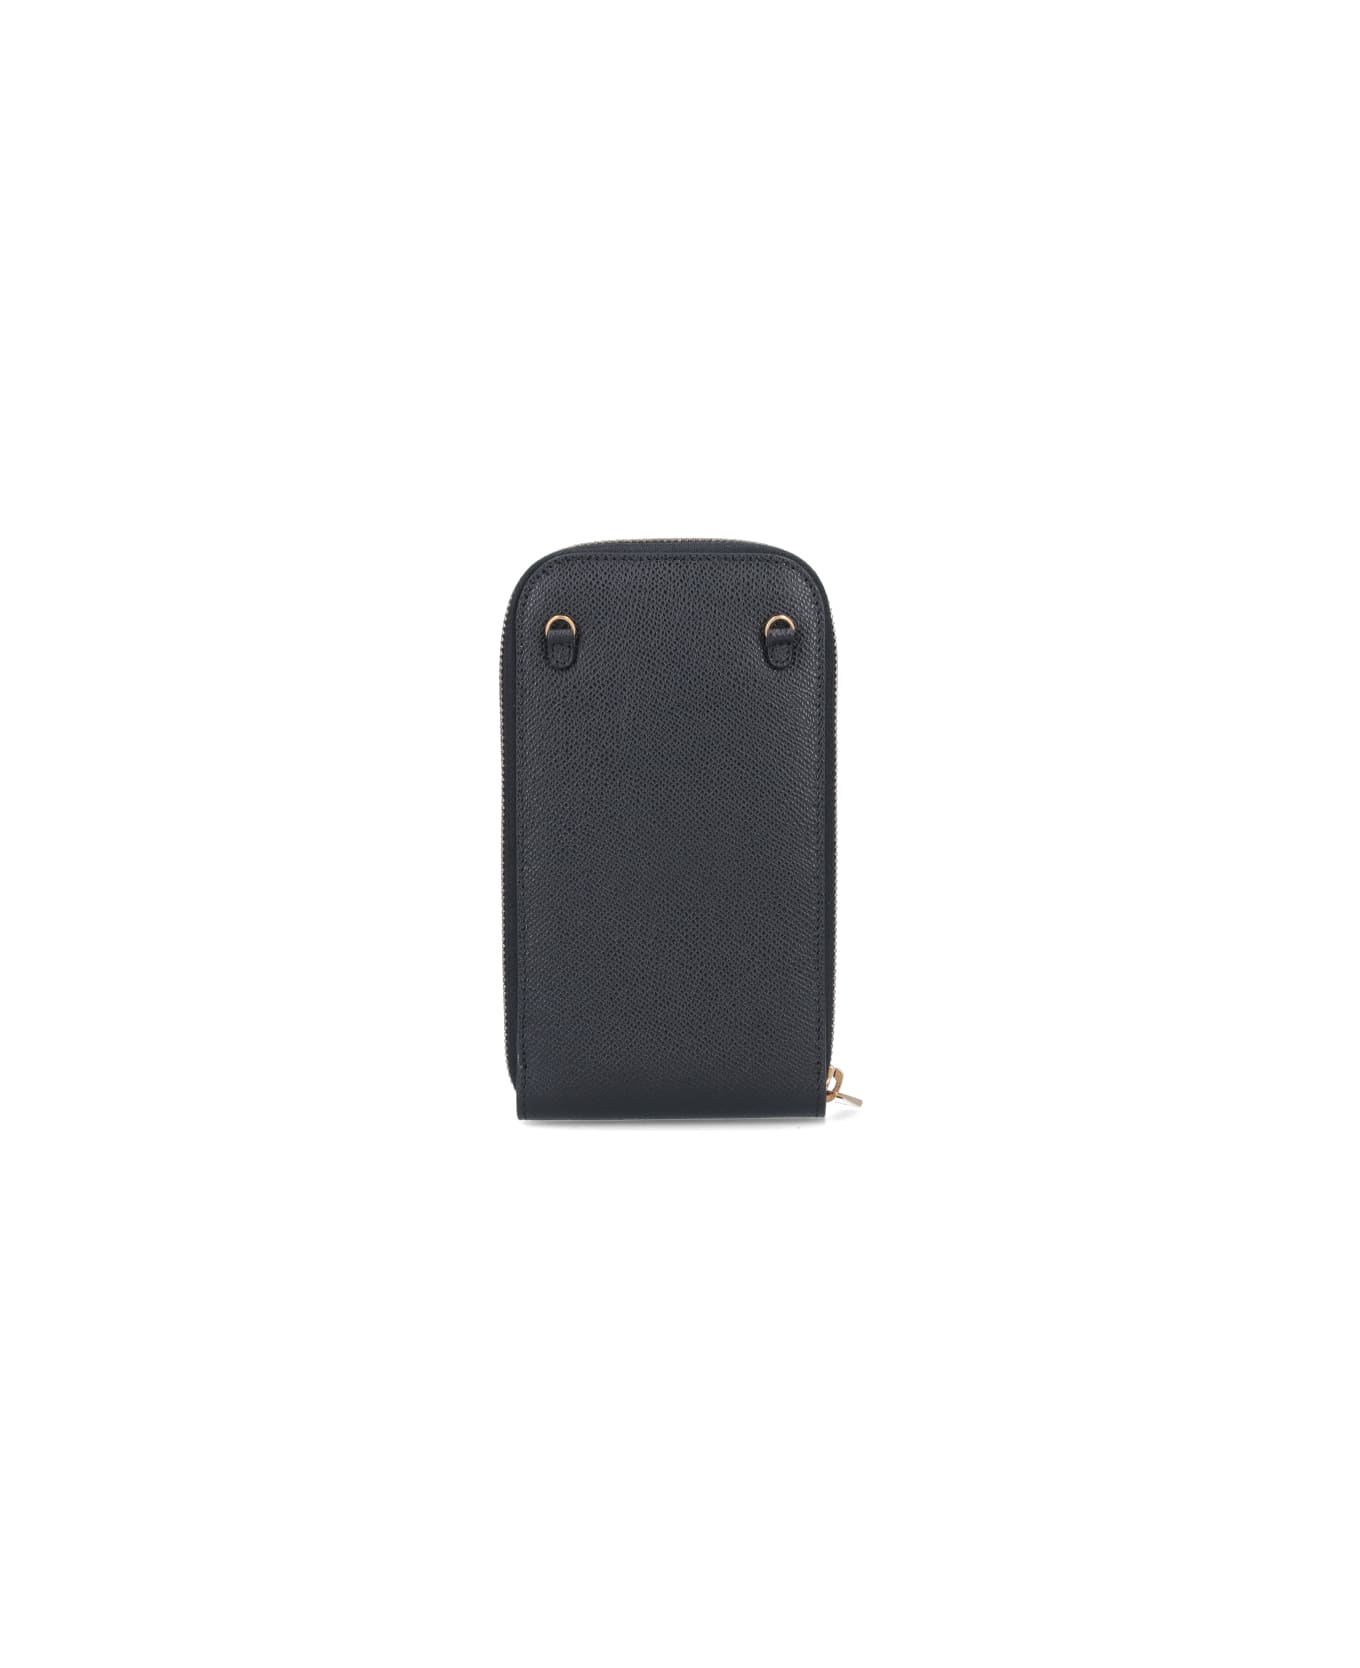 Ferragamo Gancini Leather Mobile Phone Case - black デジタルアクセサリー